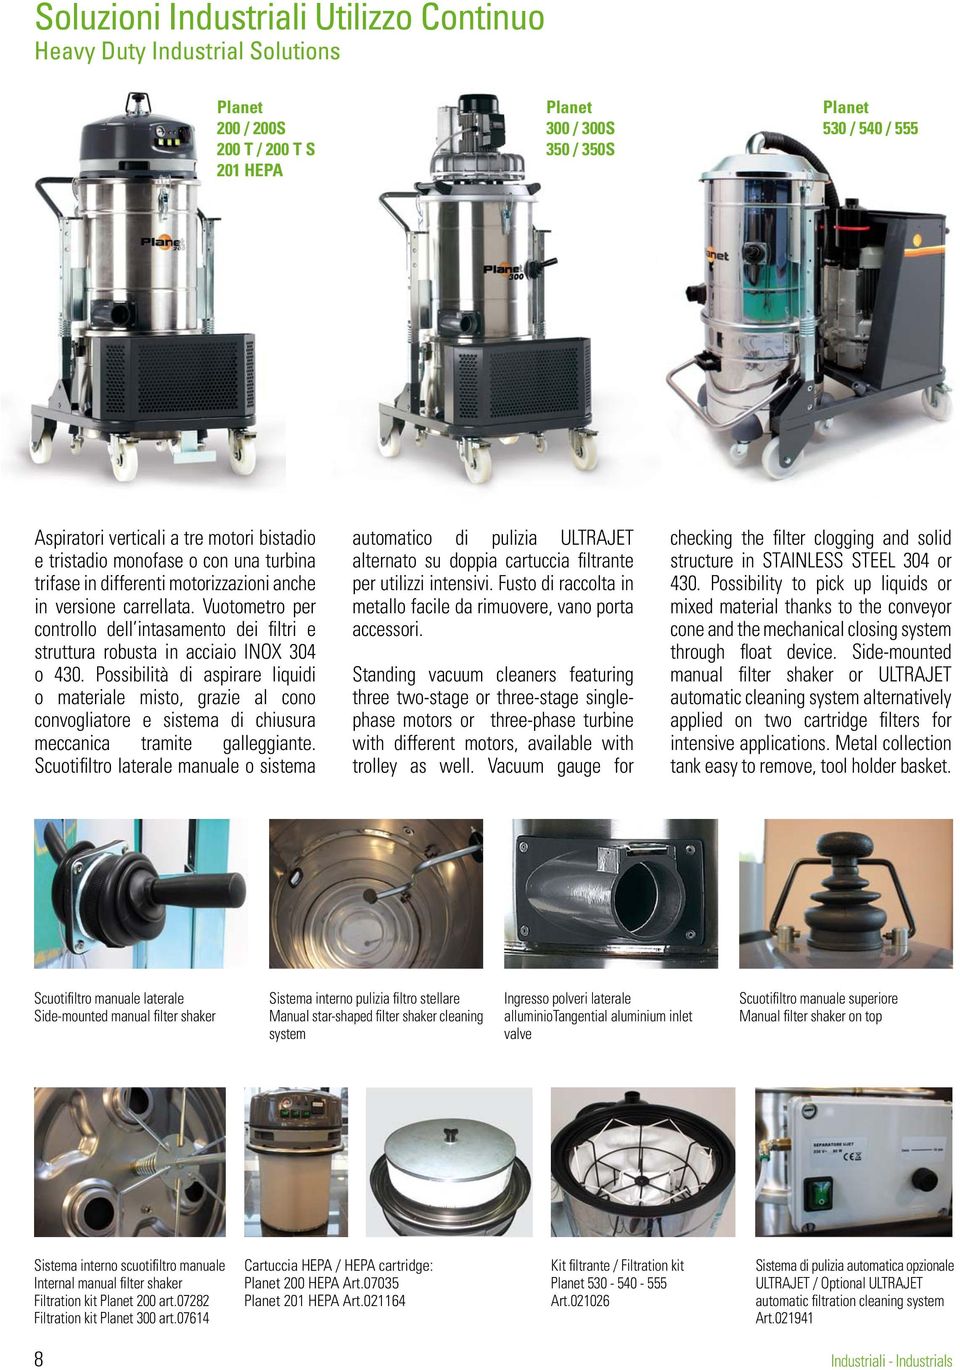 Vuotometro per controllo dell intasamento dei filtri e struttura robusta in acciaio INOX 304 o 430.